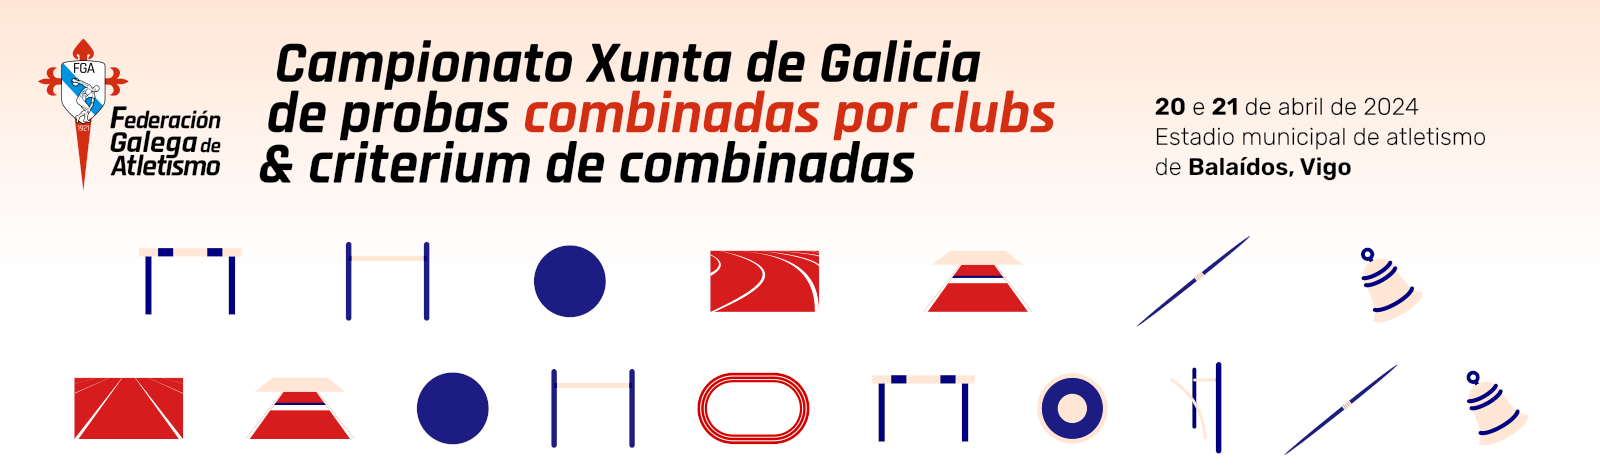  Campionato Xunta de Galicia de probas combinadas por clubs.  Estadio Municipal de Atletismo de Balaídos, 20-21 abril 2024